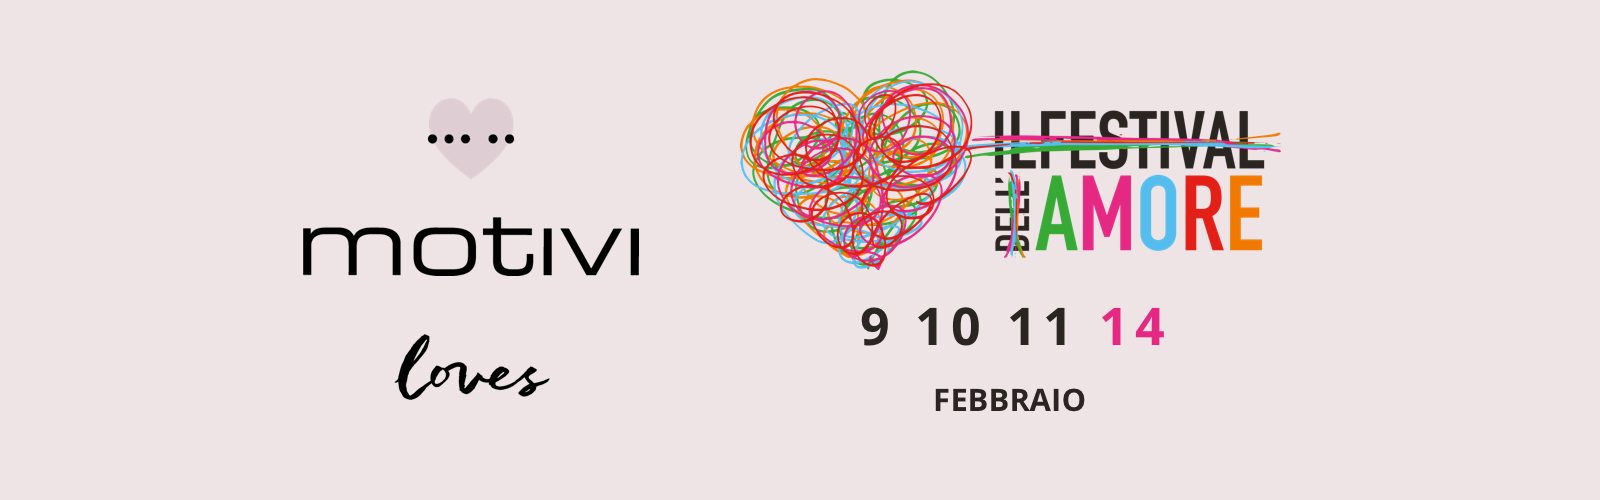 Motivi loves il festival dell'amore: dal 9 all'11 febbraio a Milano